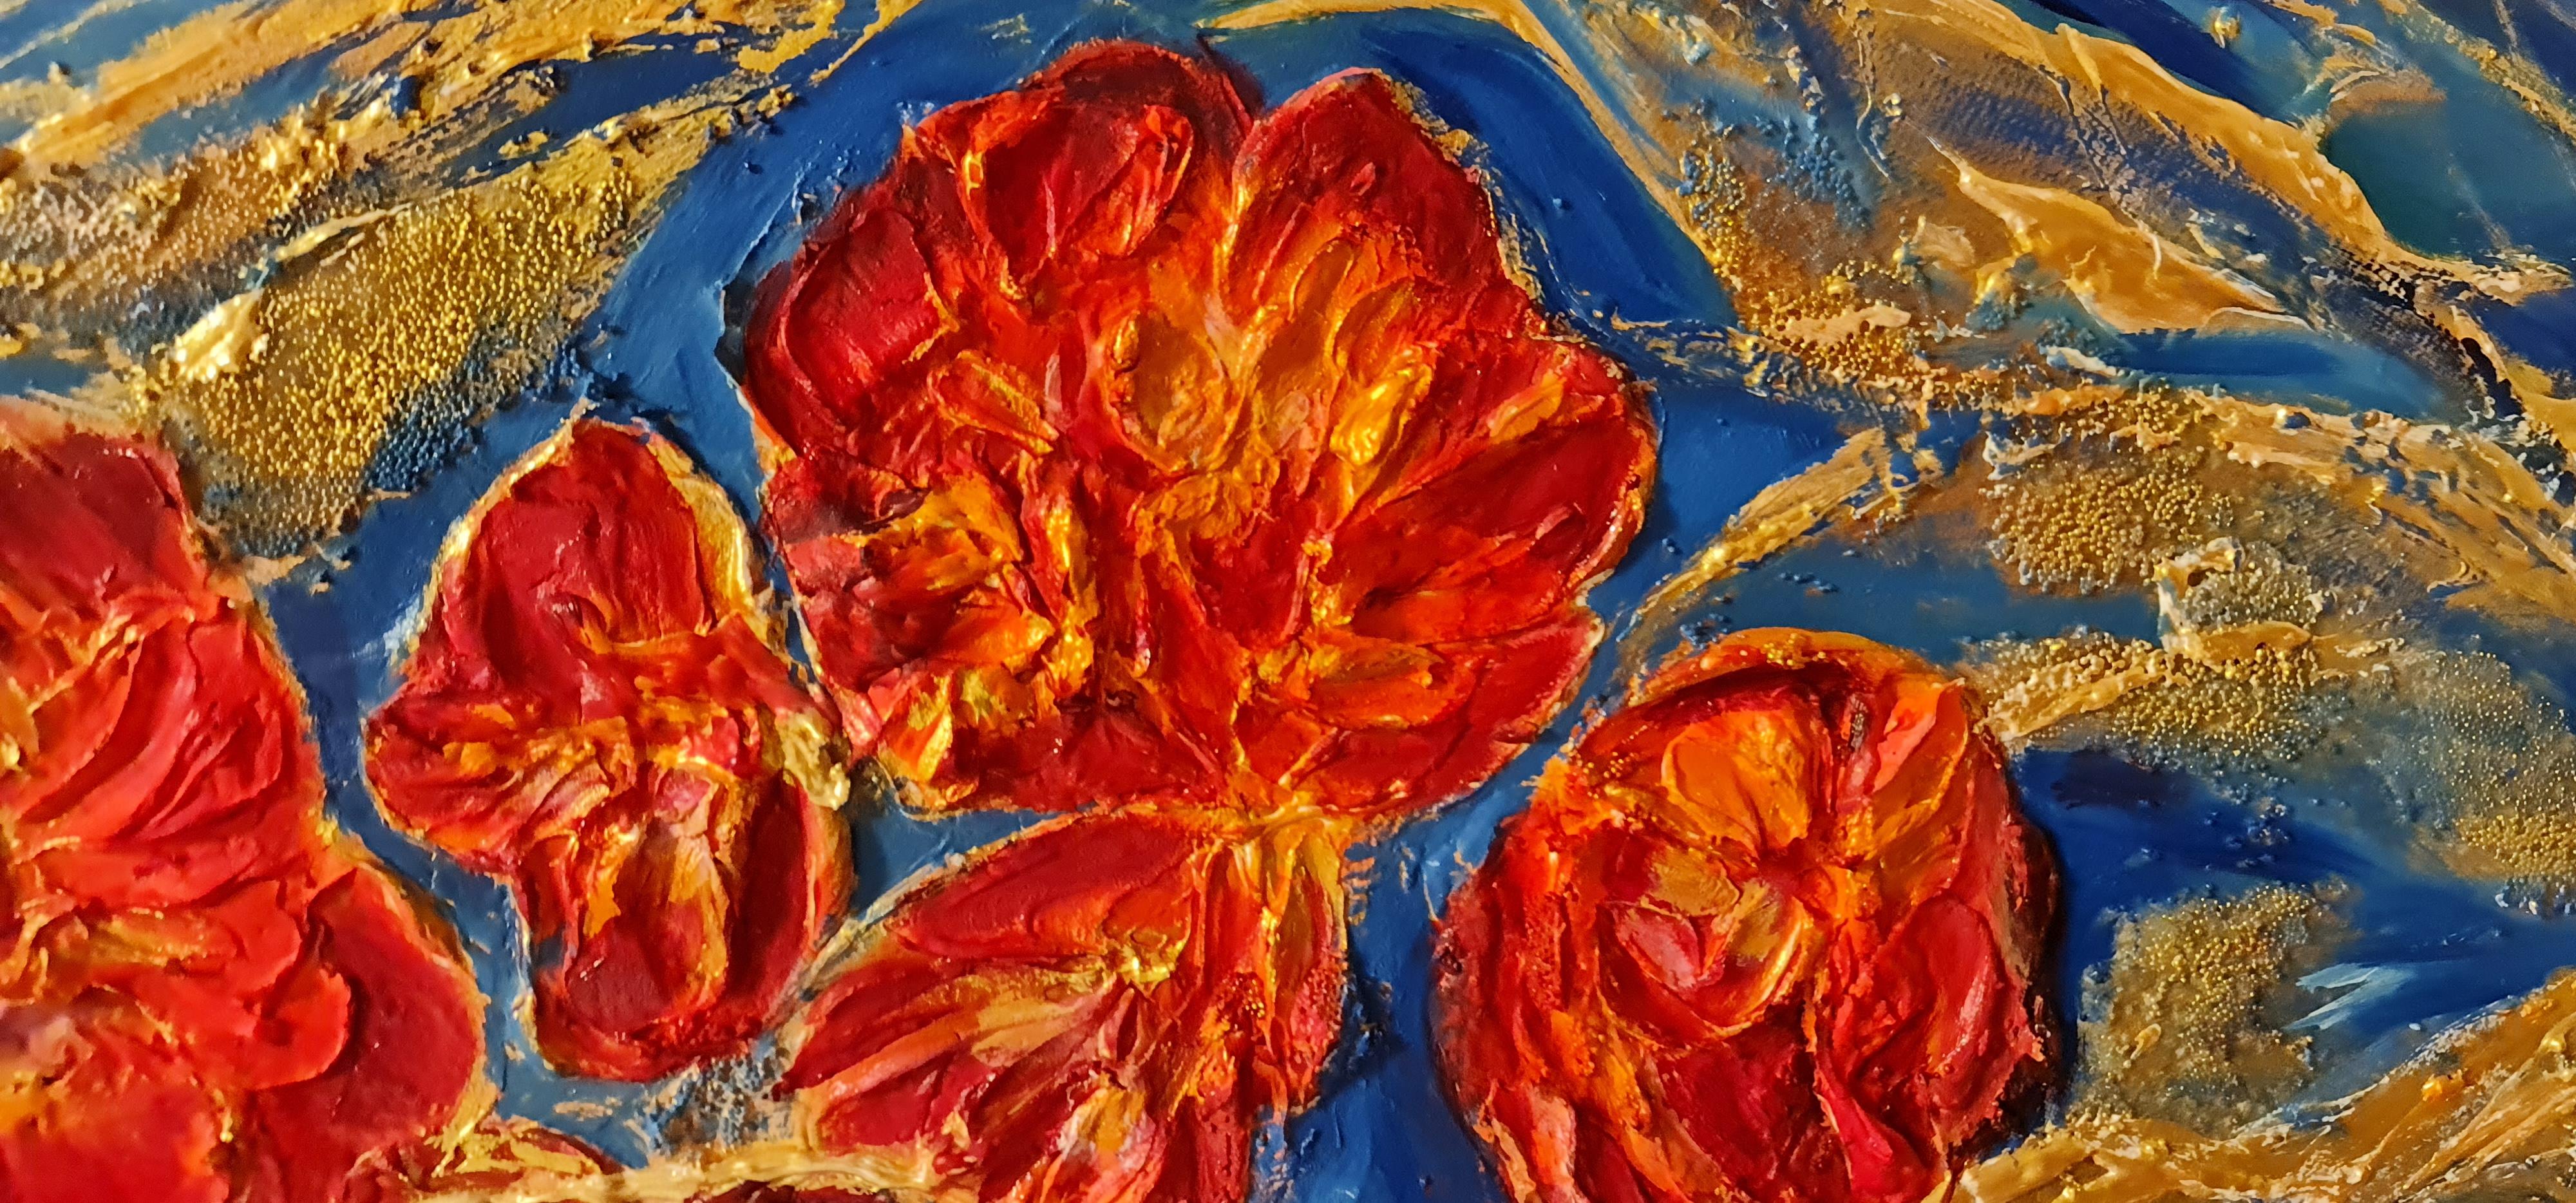 Nature morte de fleurs écarlates et orange sur fond bleu. Une composition intéressante. L'espace de la toile est entièrement rempli de fleurs. Mais il y a de l'air dans les interstices. Cela rend la peinture plus raffinée. La combinaison de l'orange